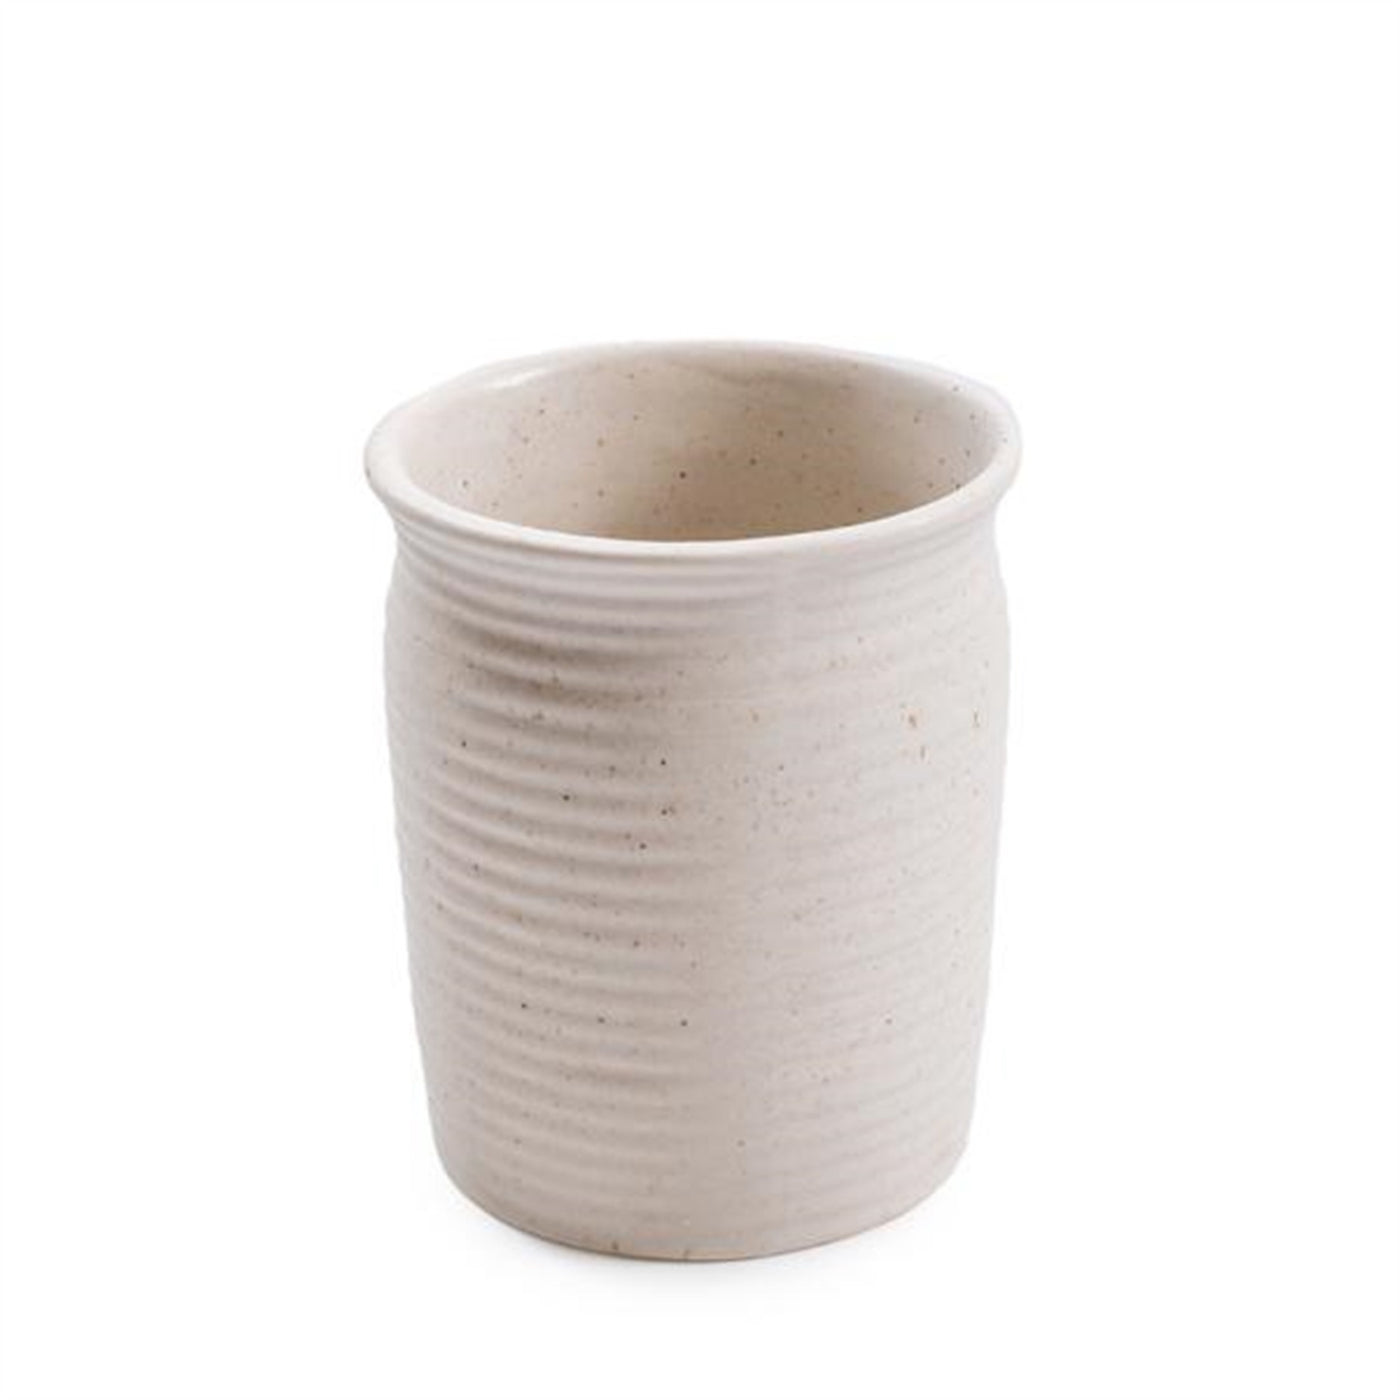 Speckled Ceramic Utensil Jar